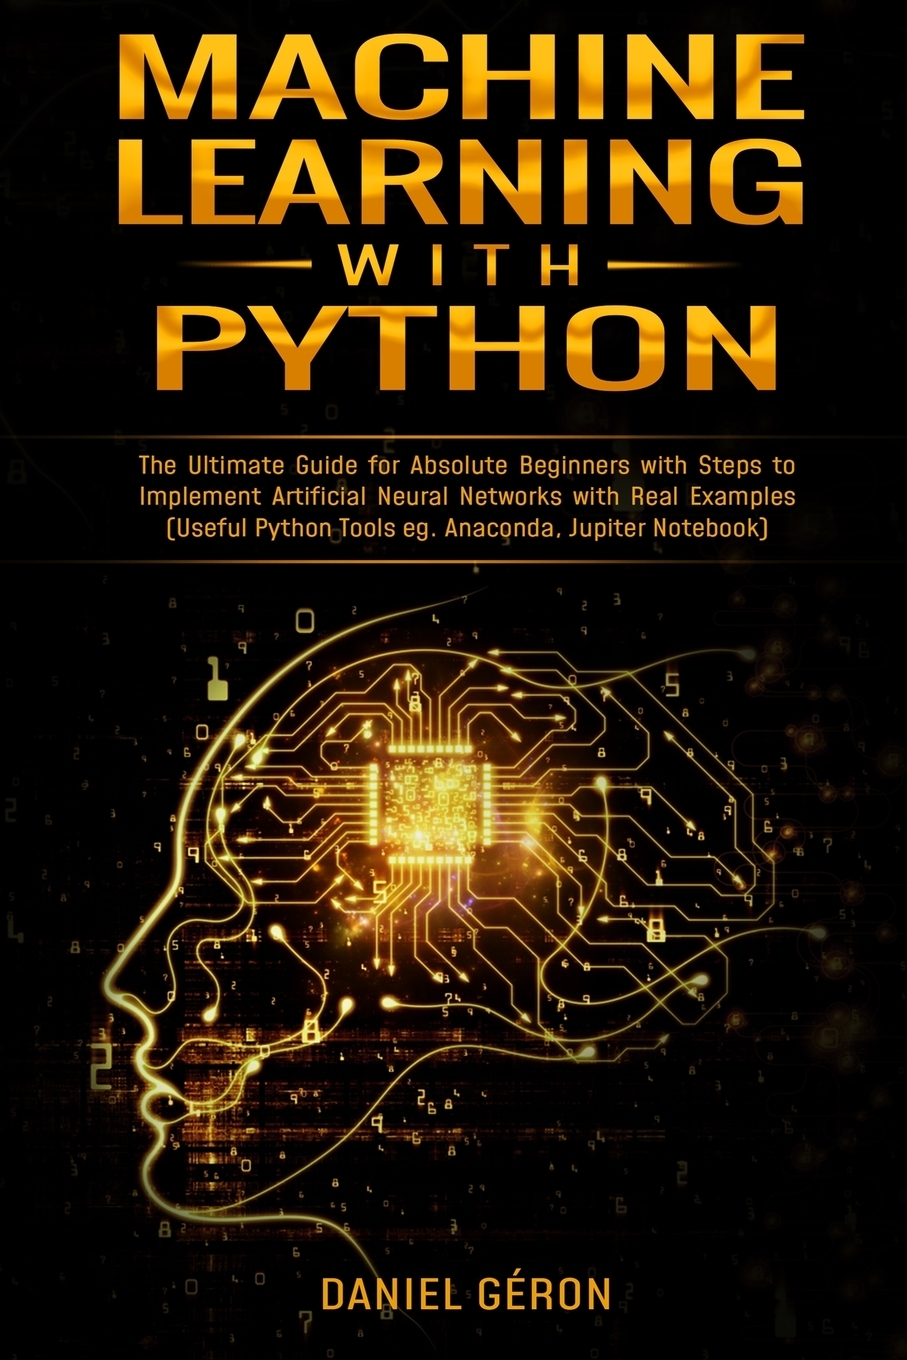 Юпитер анаконда. Машинное обучение книга. Jupiter Notebook. Анаконда Юпитер. Python Learning steps.